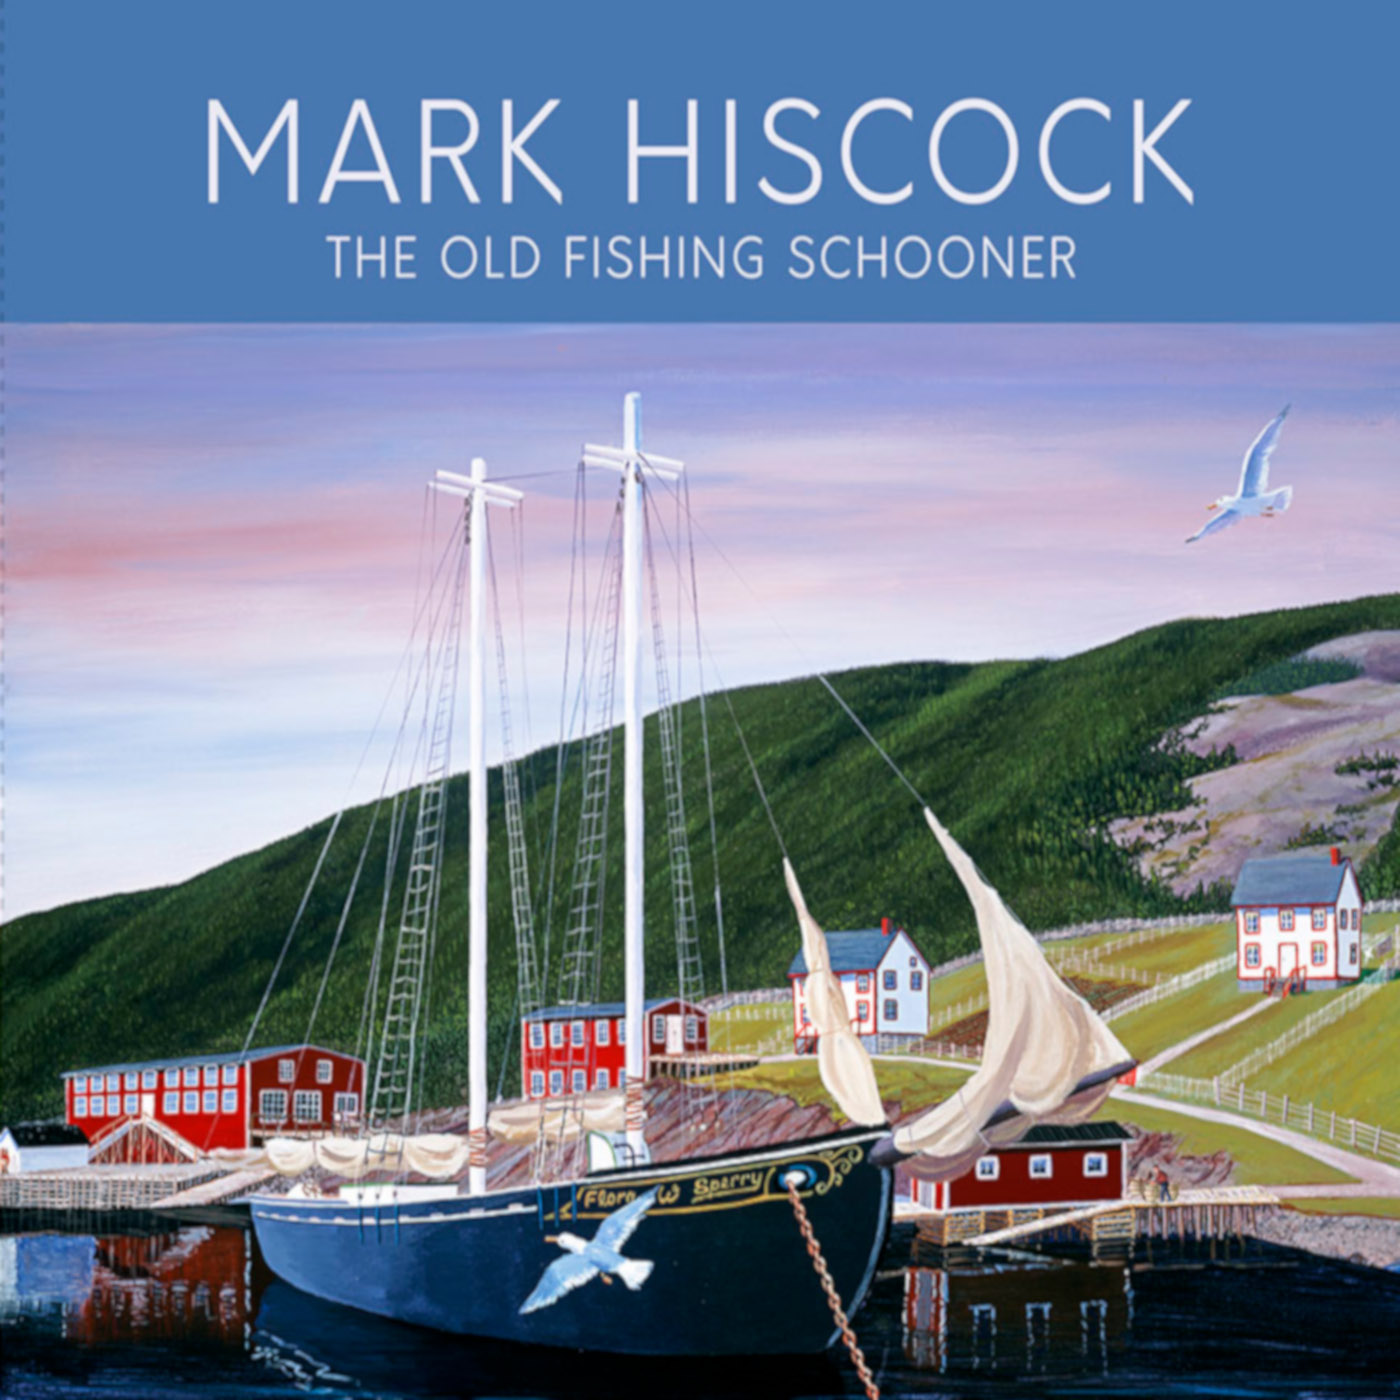 The Old Fishing Schooner